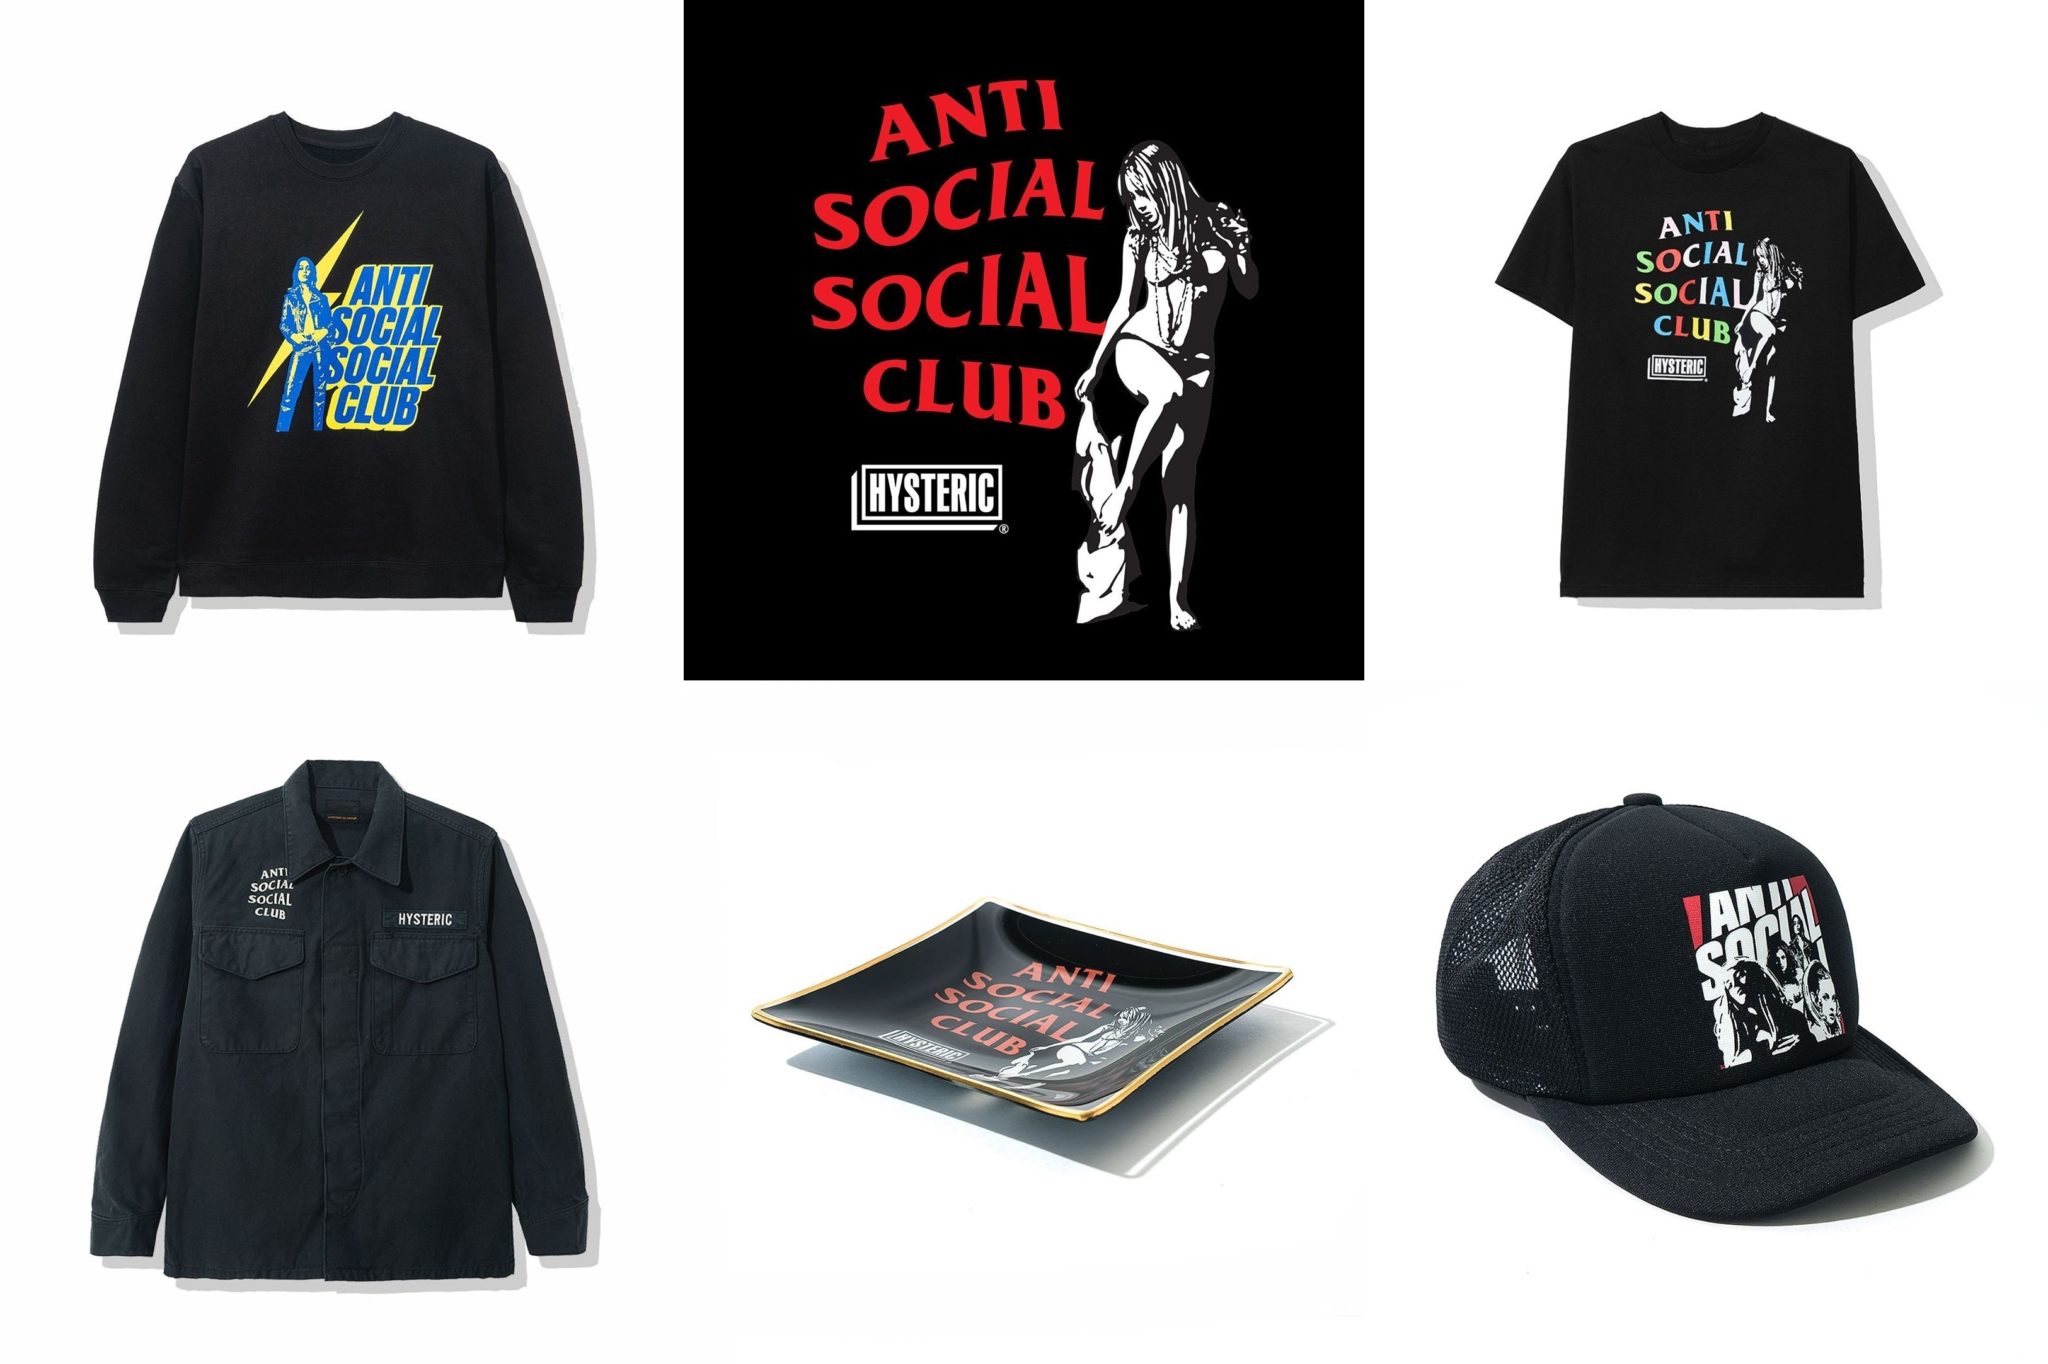 【3/28発売】Anti Social Social Club S/S 2020 COLLECTION (アンチ ソーシャル ソーシャル クラブ)